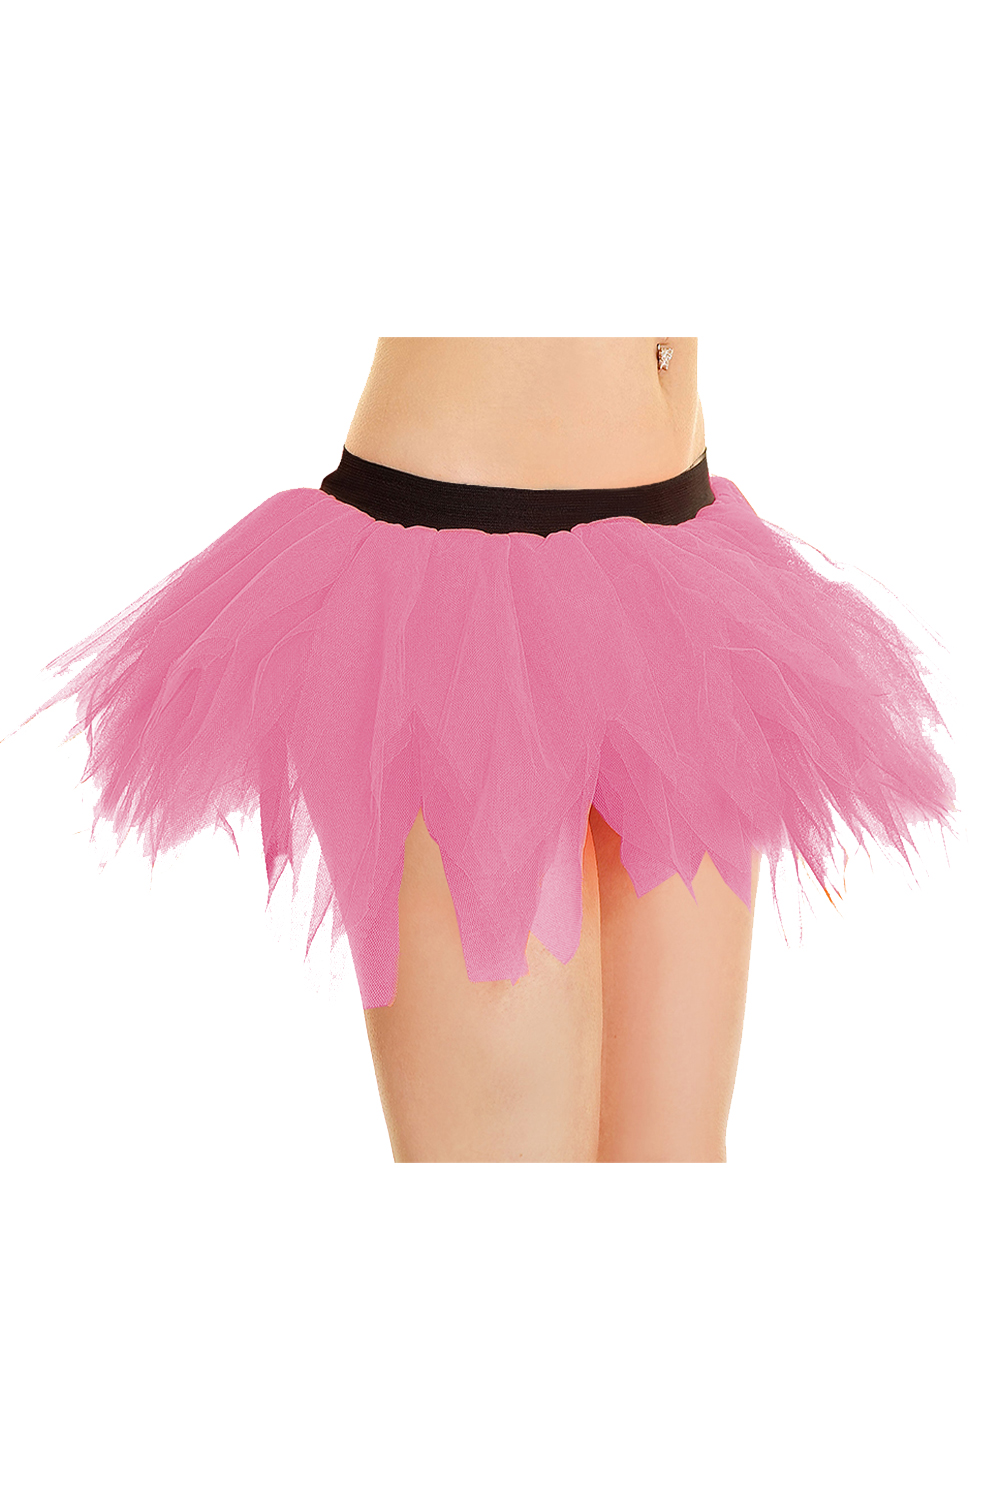 Crazy Chick Adult 6 Layer Pink Petal Tutu Skirt